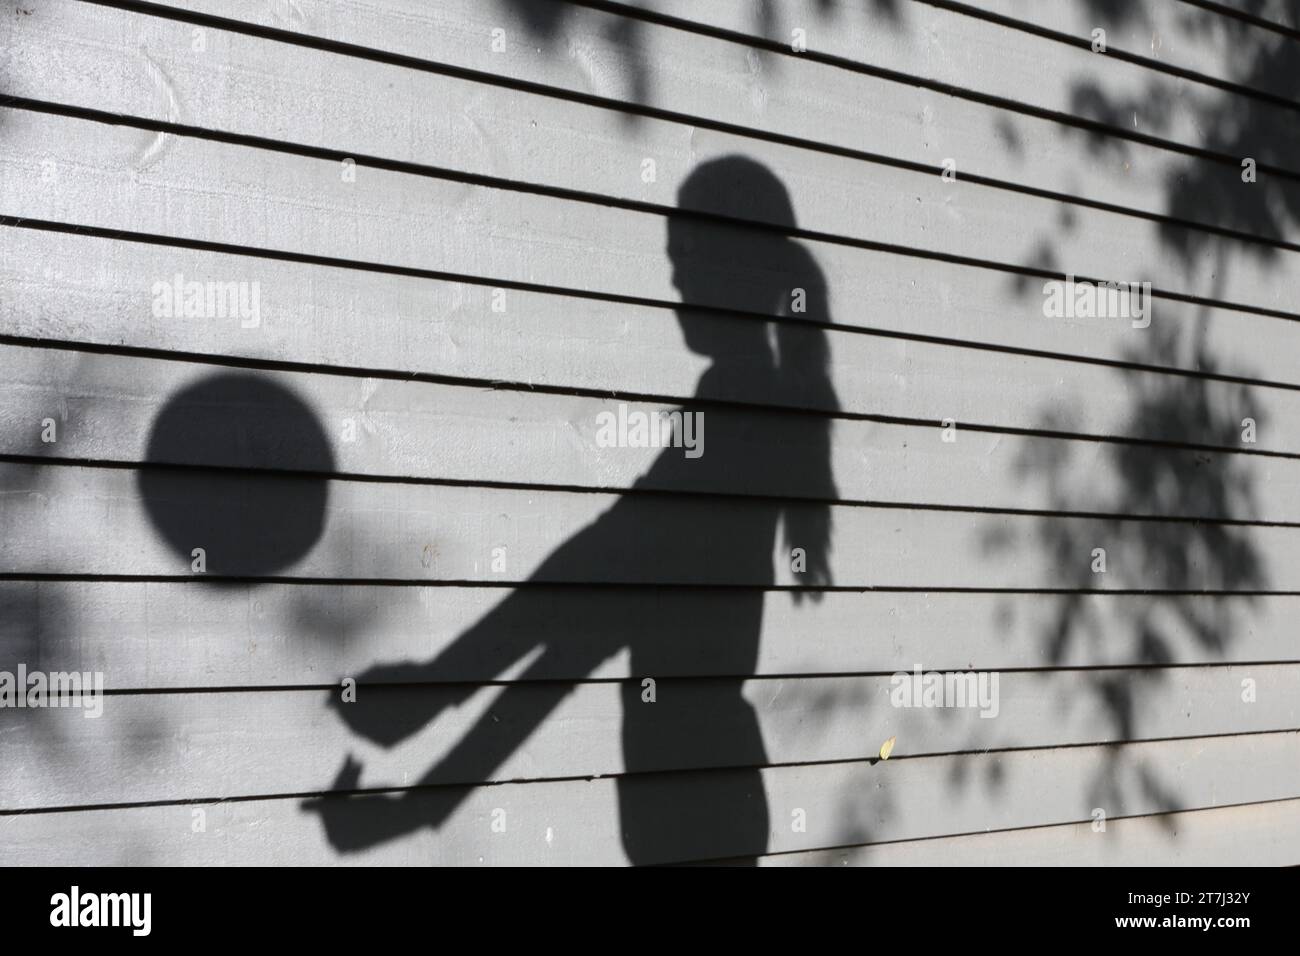 La ragazza adolescente pratica pallavolo tira l'ombra con la palla a mezz'aria con le braccia allungate Foto Stock